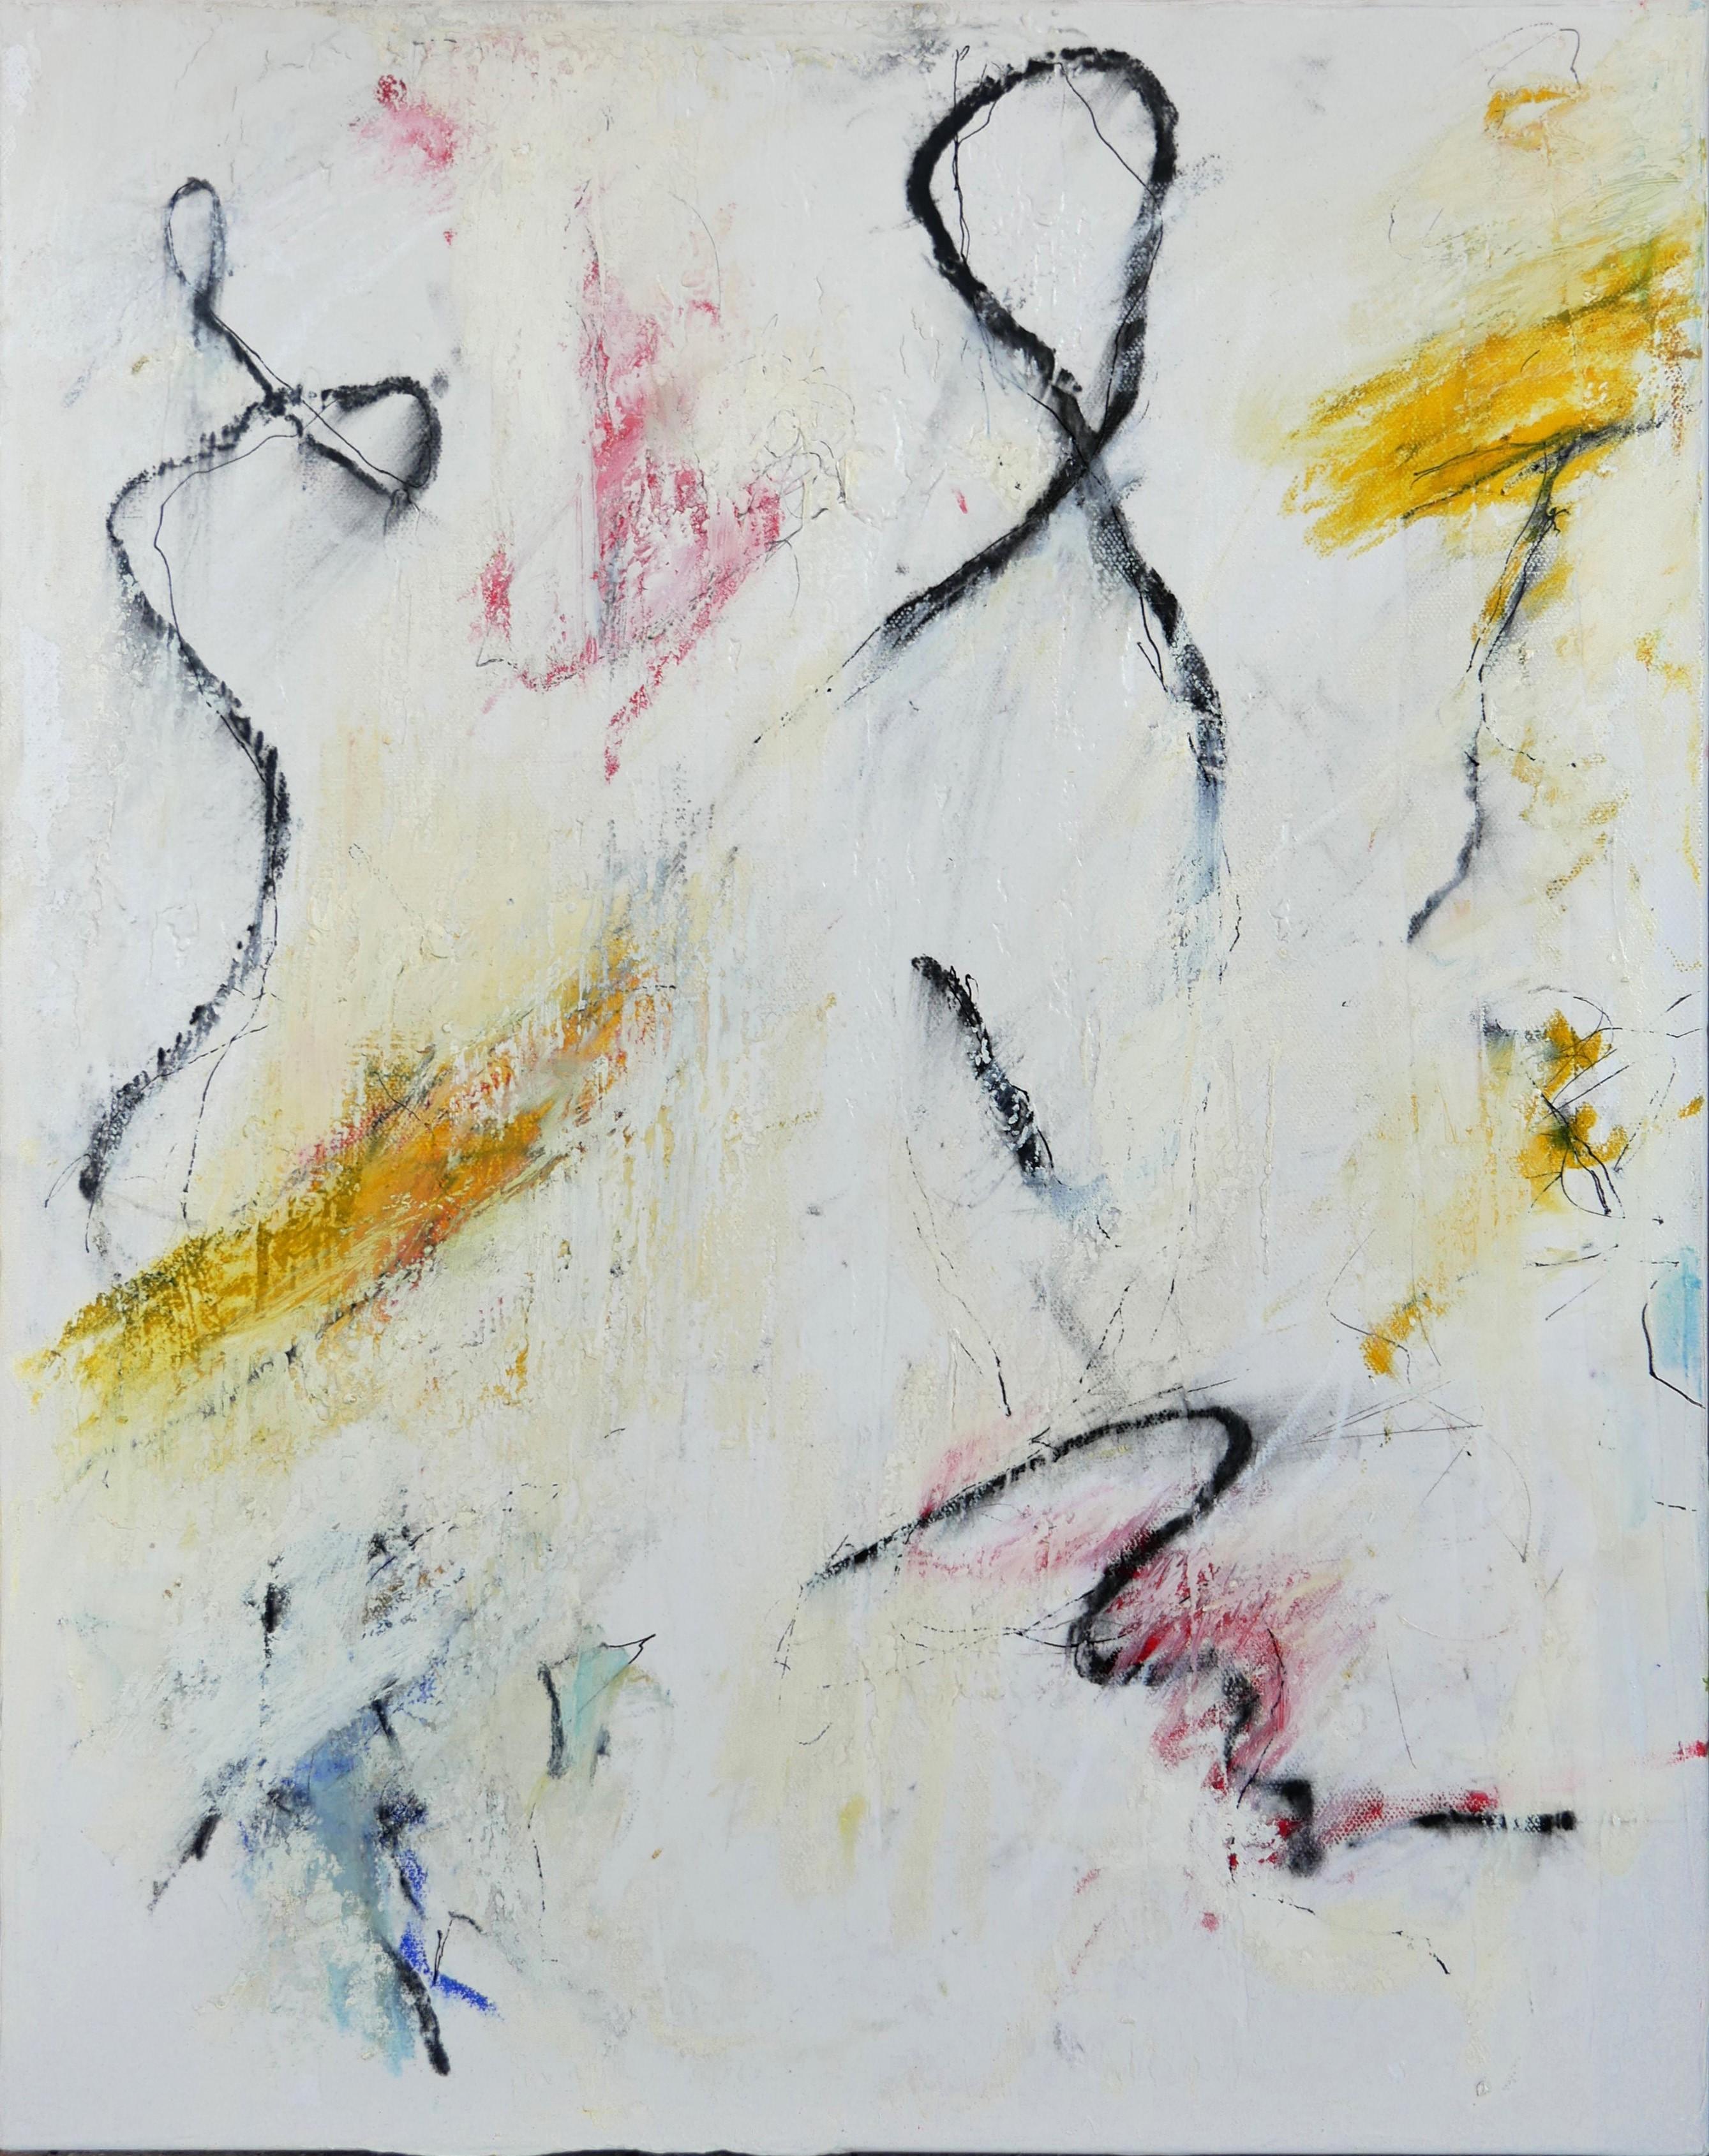 Buntes abstraktes expressionistisches Gemälde des in London geborenen Künstlers Tony Magar. Das Werk zeichnet sich durch eine energiegeladene Anordnung roter, gelber, blauer und schwarzer Linien und Markierungen vor einem weißen Hintergrund aus.